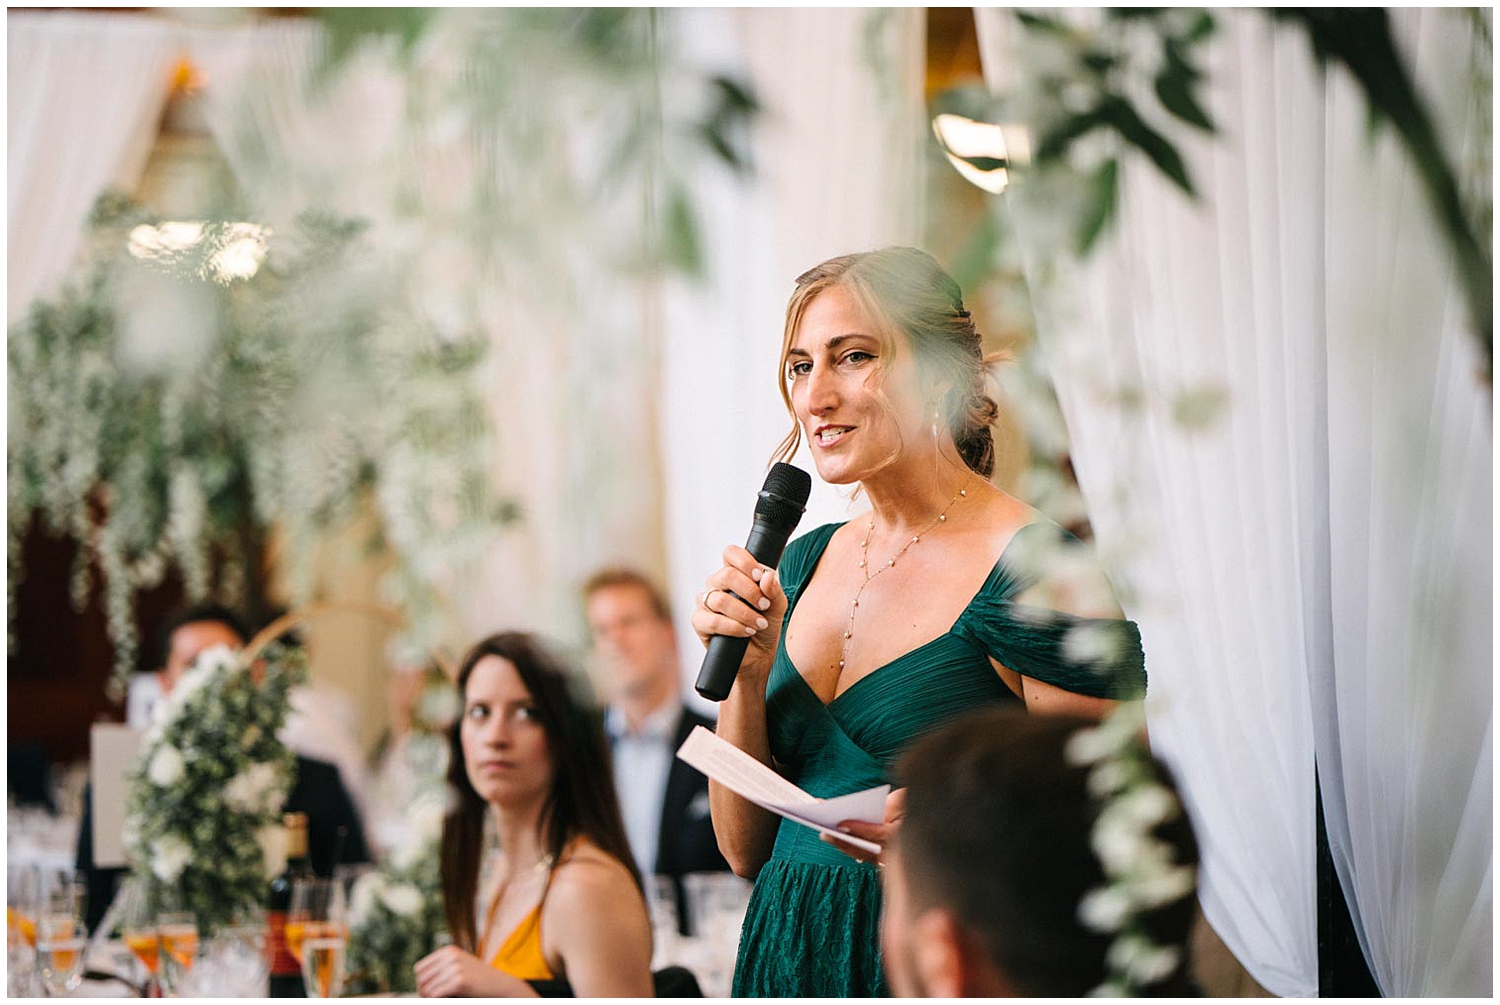 A bridesmaid giving a speech during a wedding reception. 